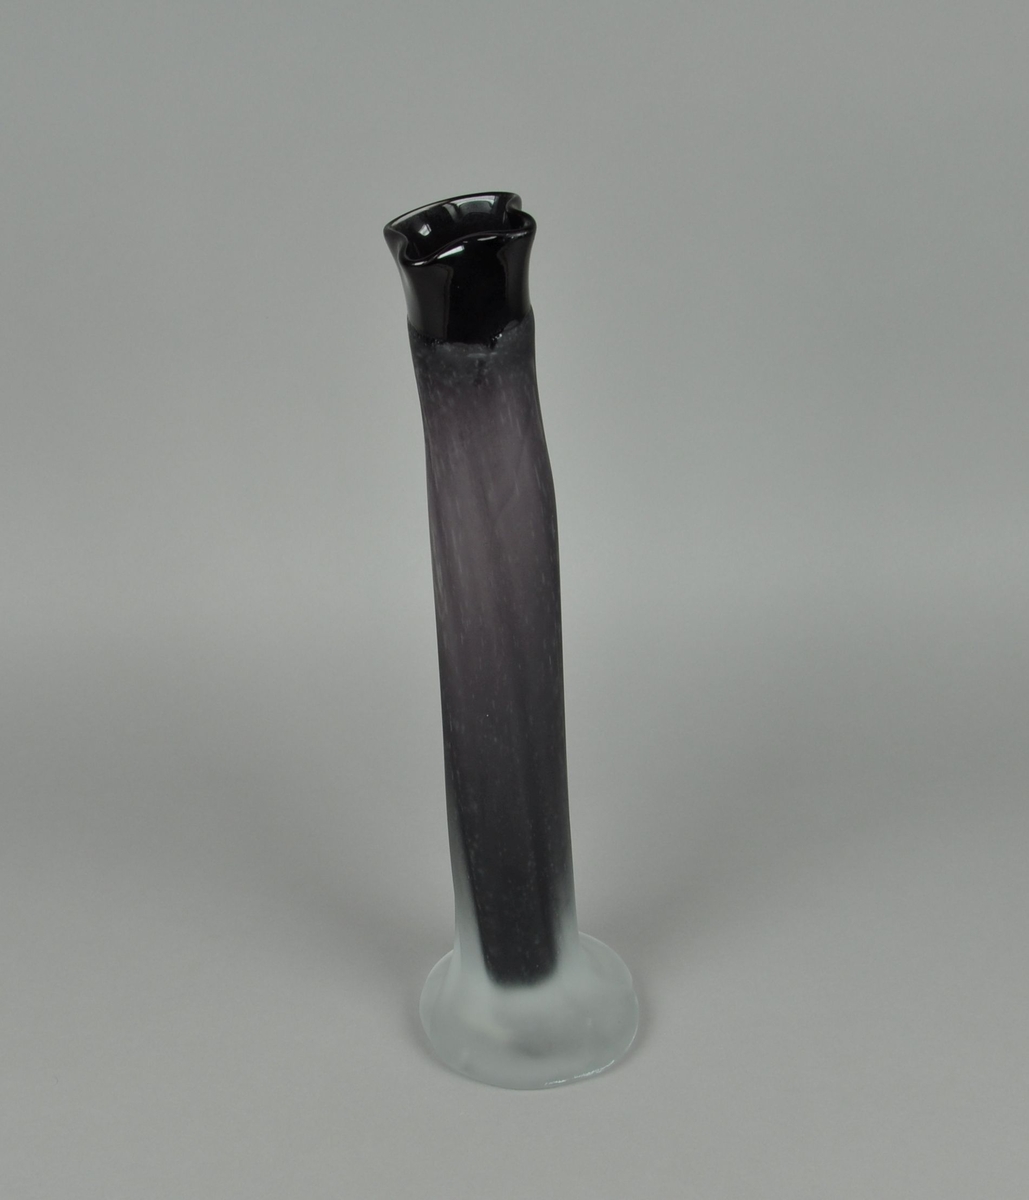 Munnblåst vase av glass. Sylindrisk form, med bølgete form øverst og utvidelse til sokkel nederst. Vasen er blåst med lilla glass med klart overfangsglass. Overflaten er frostet.